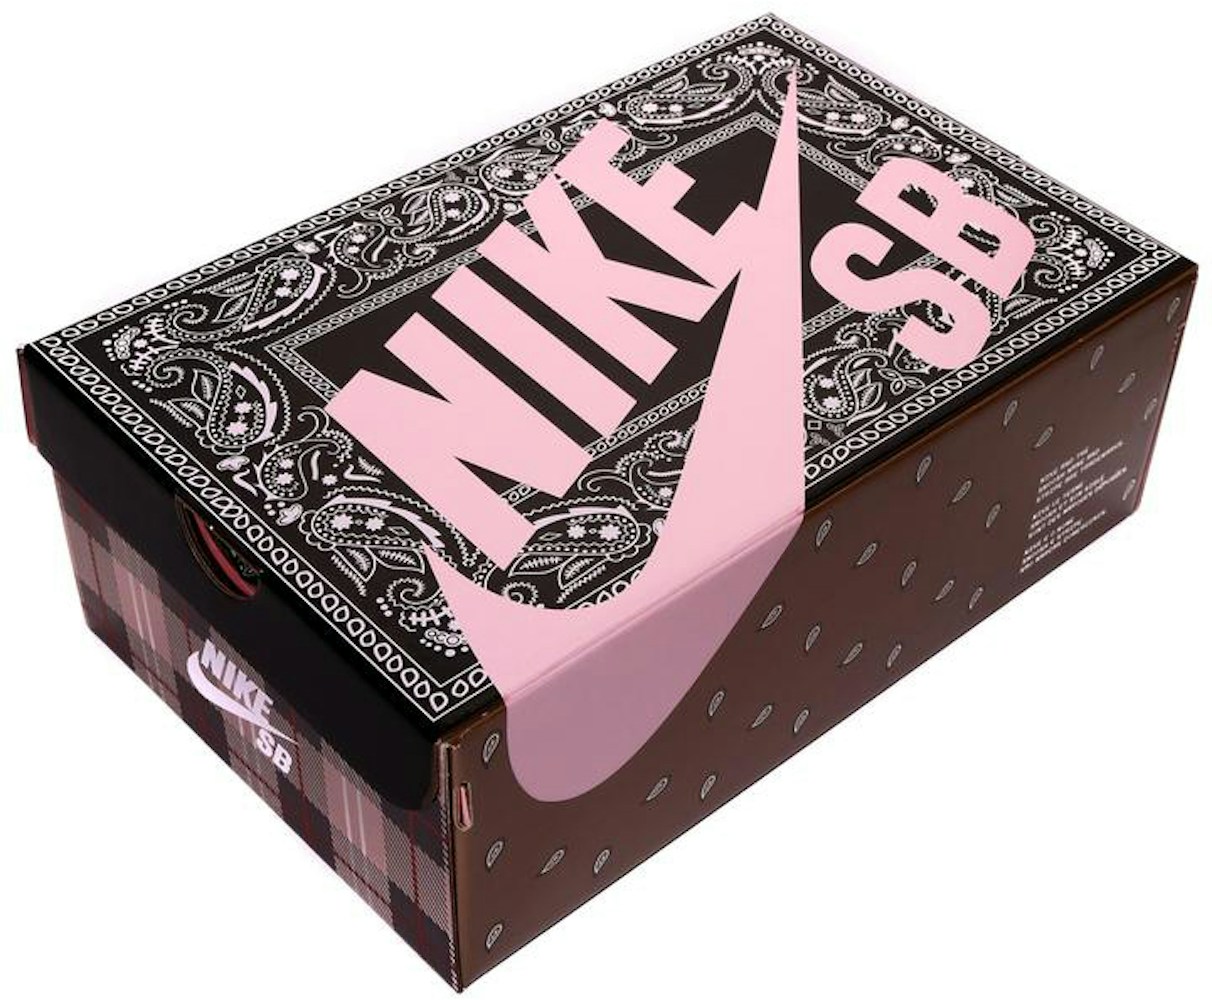 Nike Sb Dunk Low Travis Scott Special Box Ct5053 001